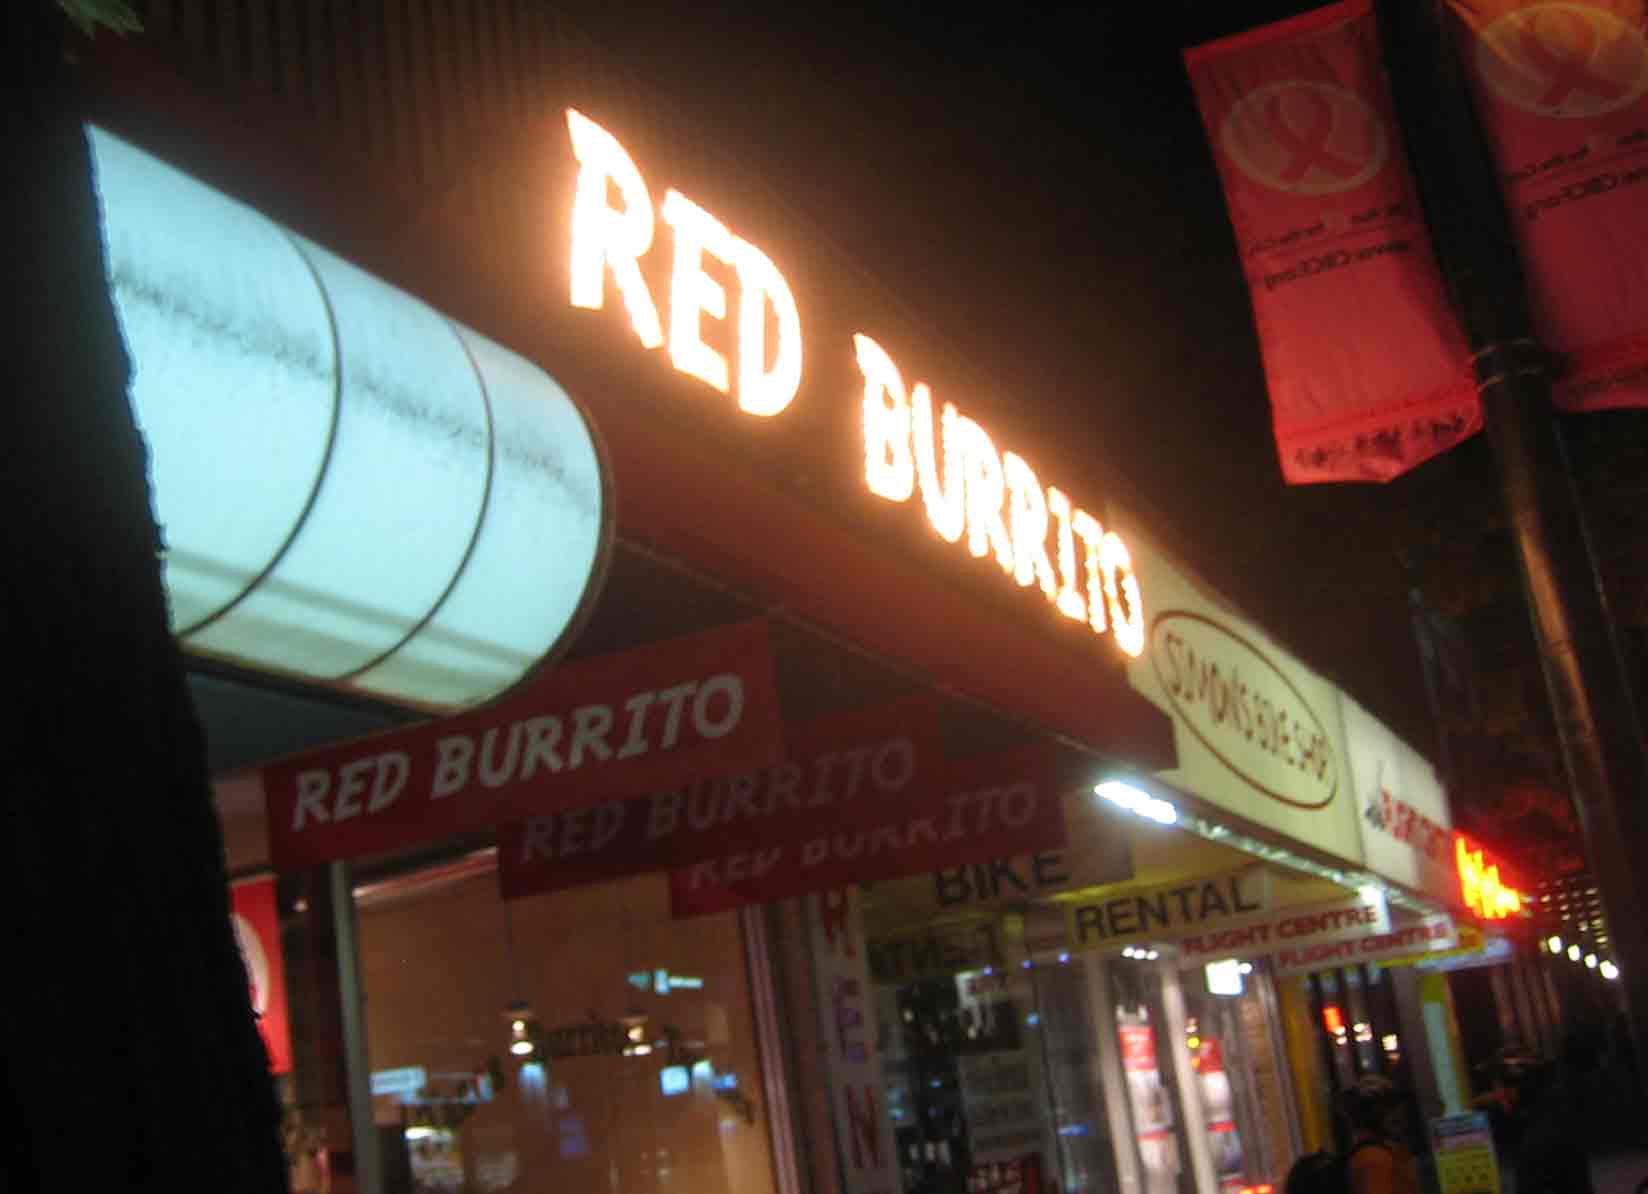  Red Burrito Ext